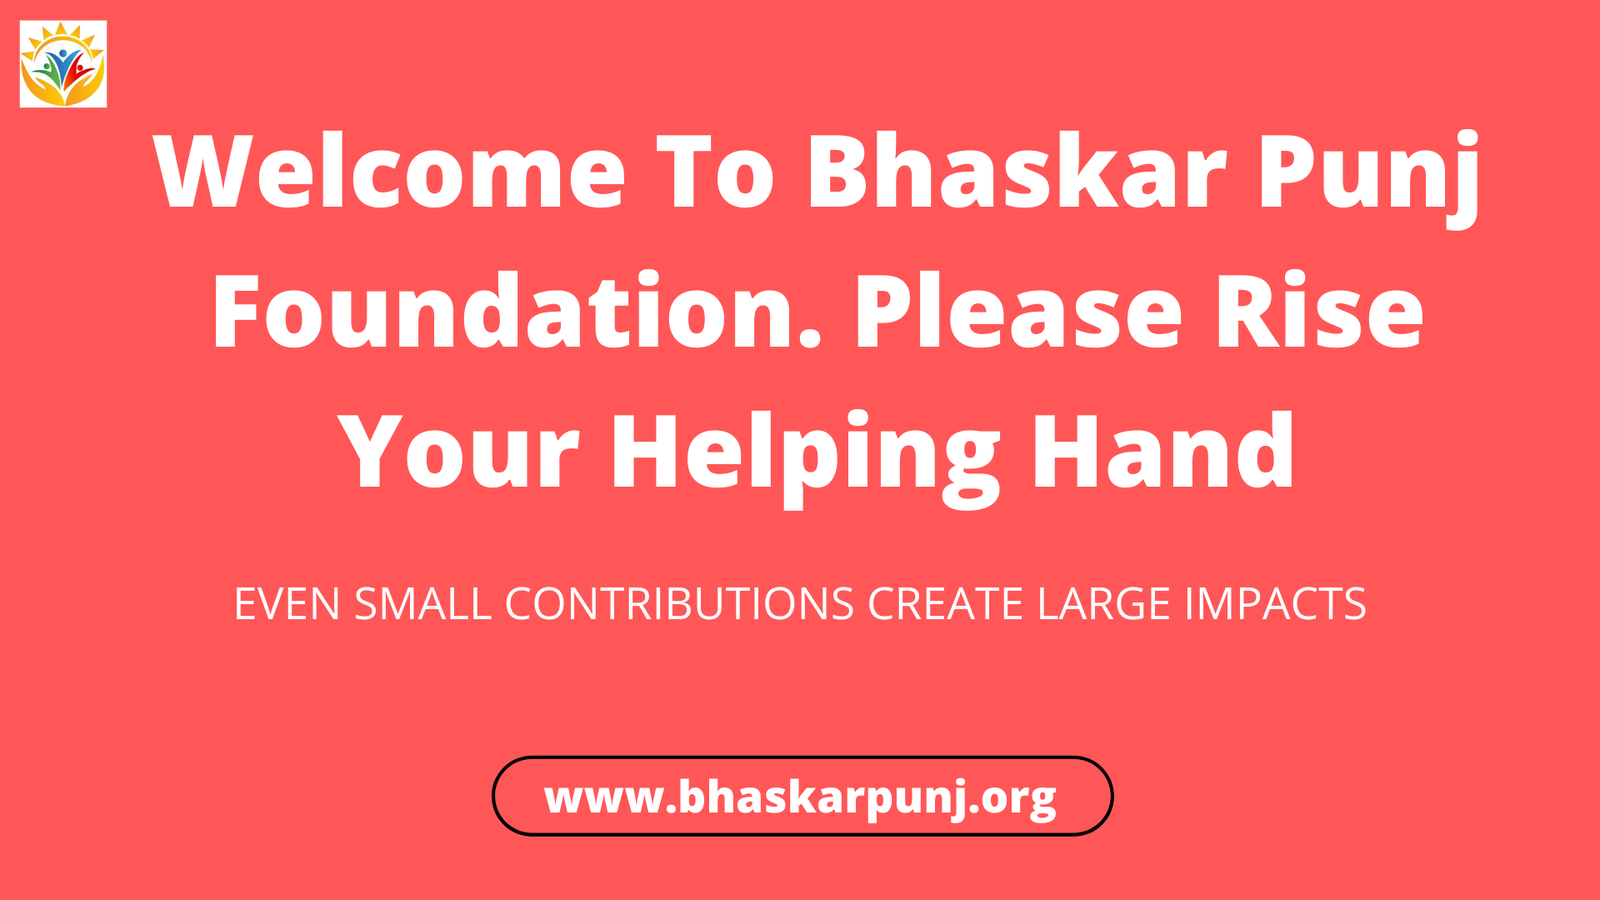 Bhaskar Punj Foundation